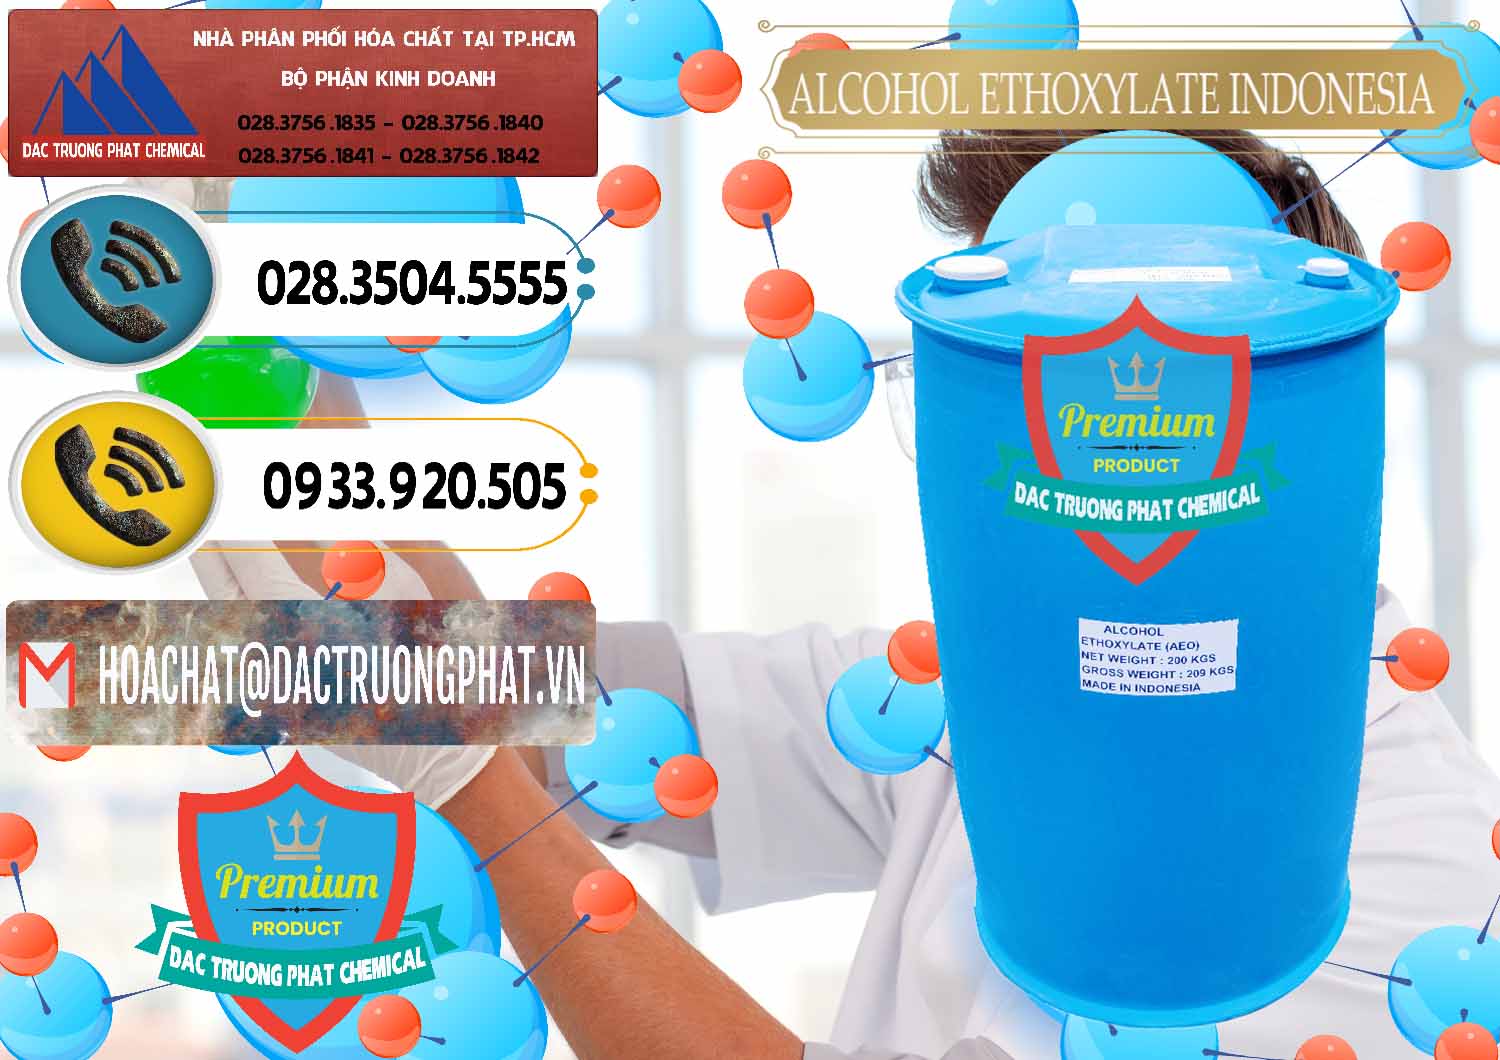 Cty cung cấp - bán Alcohol Ethoxylate Indonesia - 0308 - Cty chuyên cung cấp - kinh doanh hóa chất tại TP.HCM - hoachatdetnhuom.vn